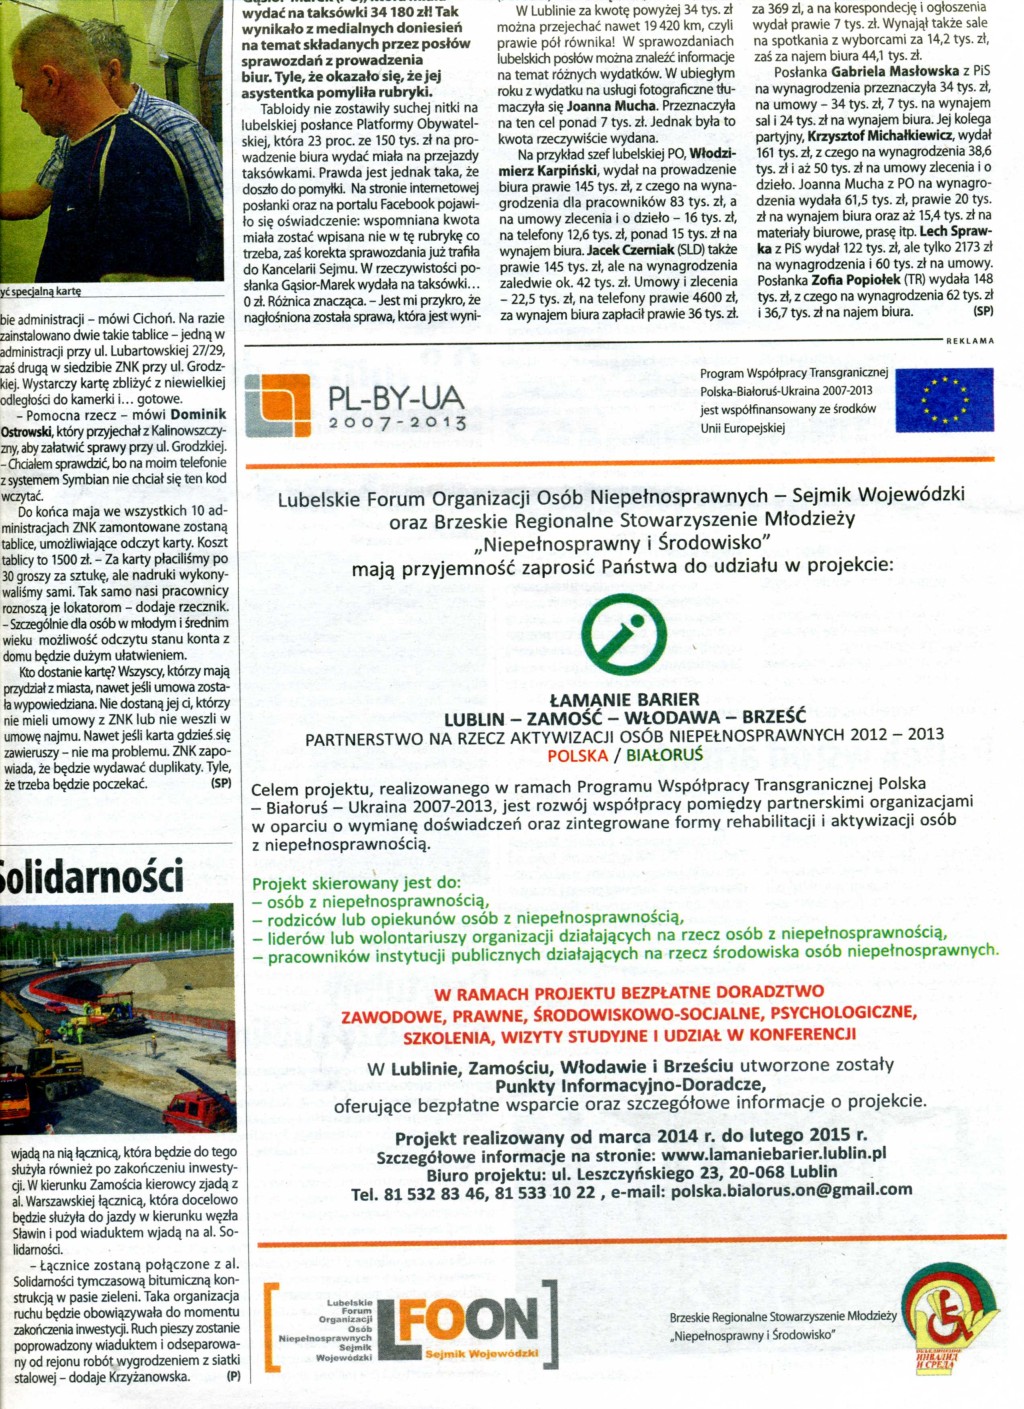 Tygodnik Lubelski NOWY TYDZIEŃ 28 kwietnia - 4 maja 2014